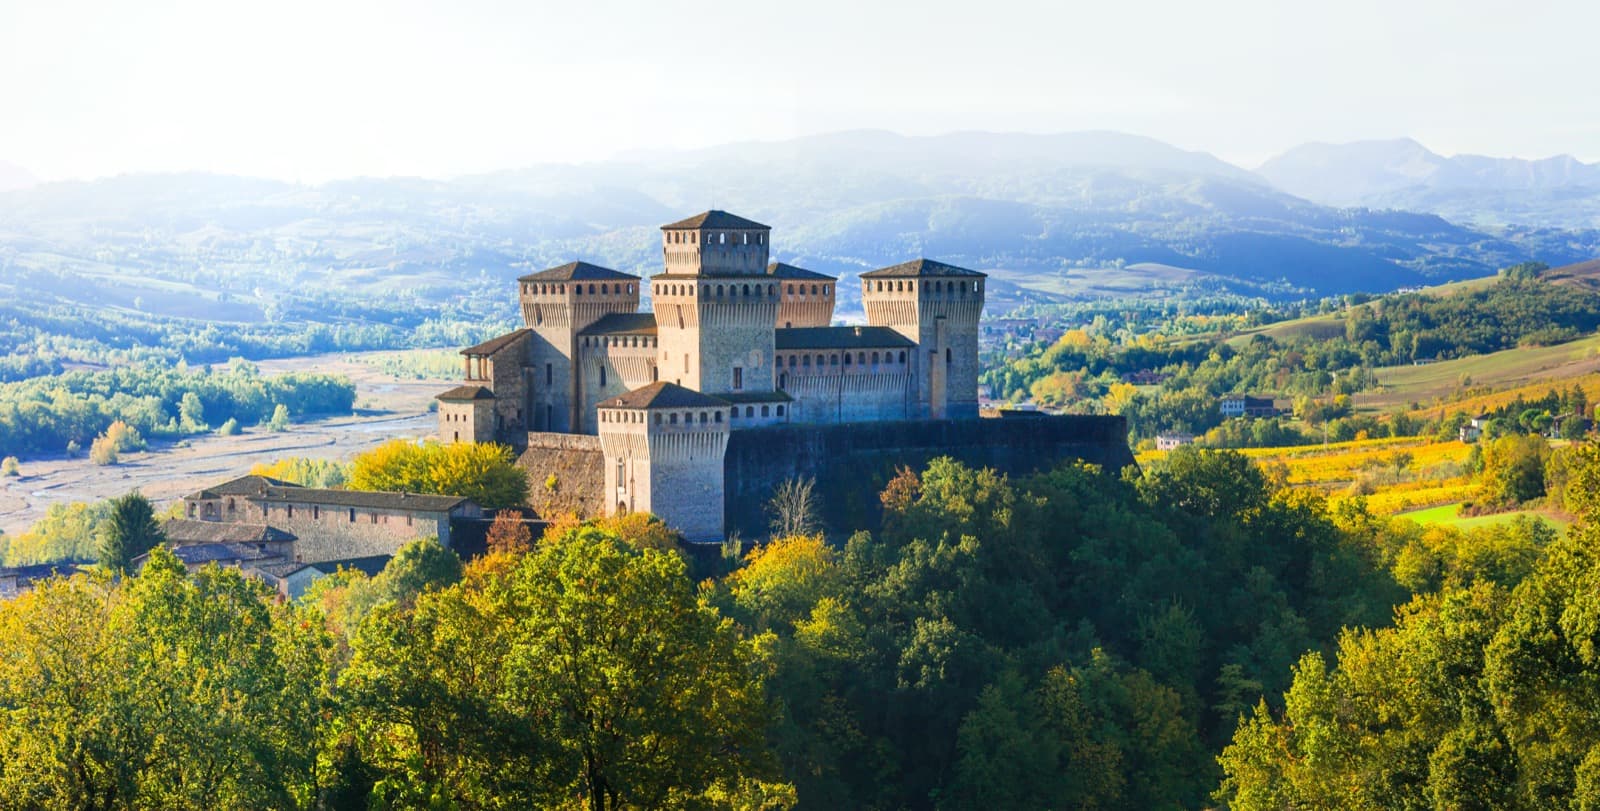 Il Castello di Torrechiara (Parma), la fortezza dal cuore affrescato